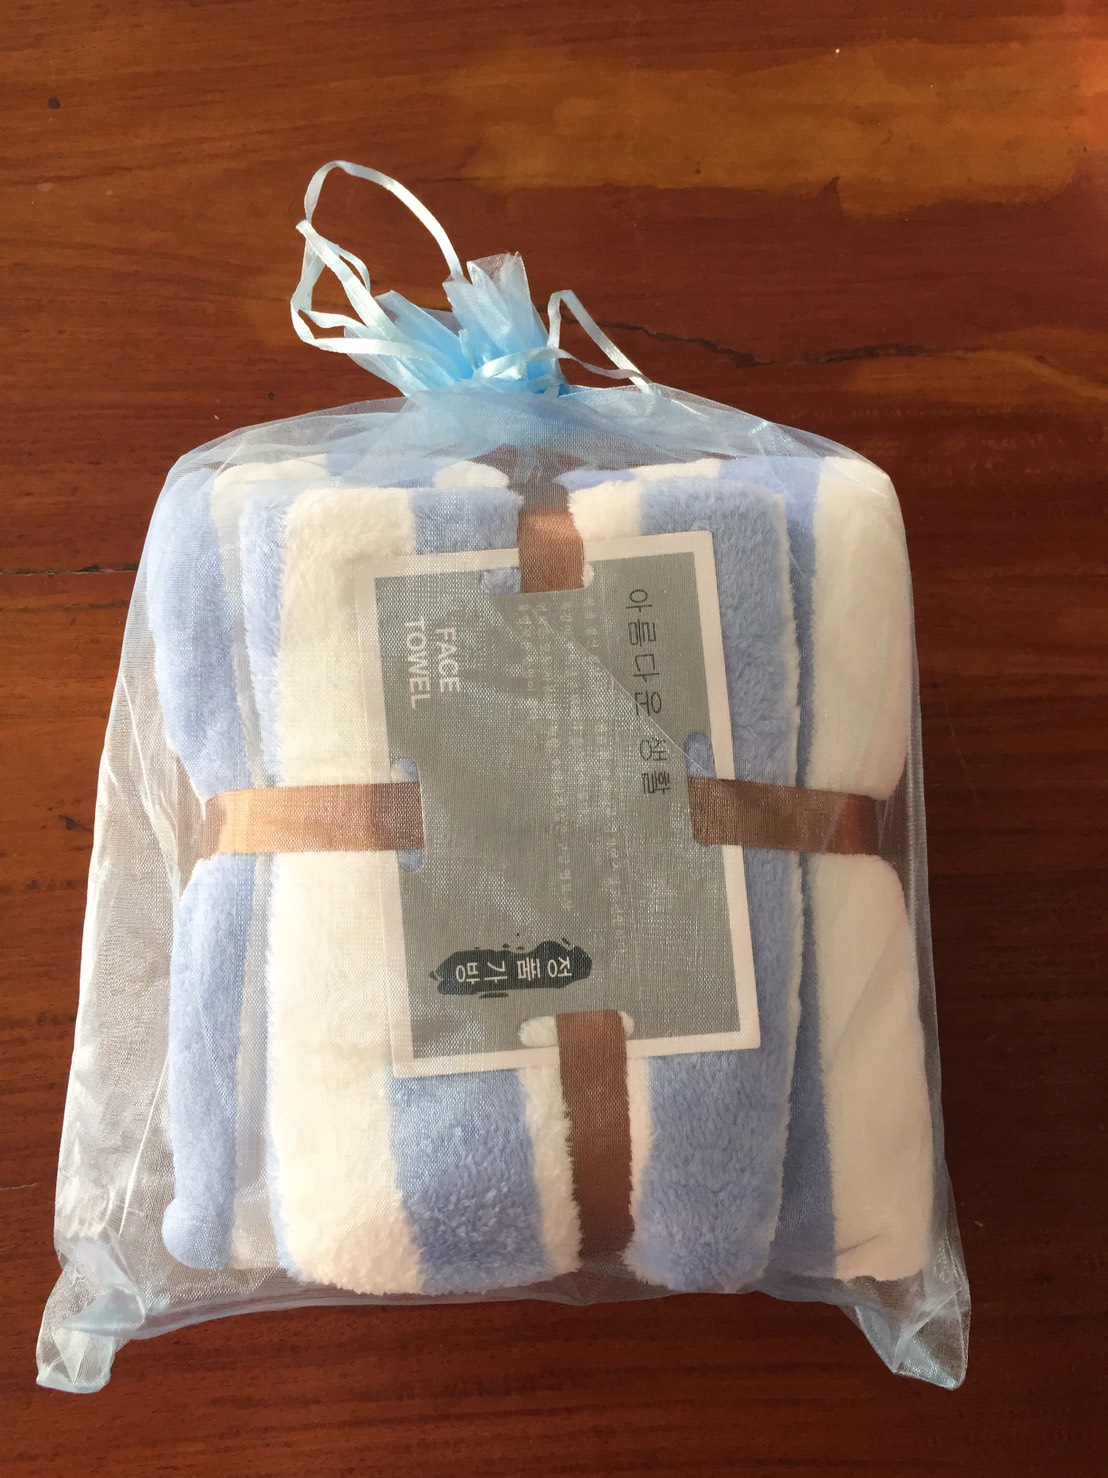 ข้อมูลเพิ่มเติมของ ผ้าเช็ดตัวขนเป็ดลายริ้ว แพ็คเซ็ท (towel bath)  ใส่ถุงไหมแก้ว (ผ้าเช็ดตัว 70X140ซม.+ผ้าเช็ดผม 35X75 ซม.) ผ้าขนหนูอาบน้ำ   กุ๊นขอบอย่างดี เกรดพรีเมี่ยม